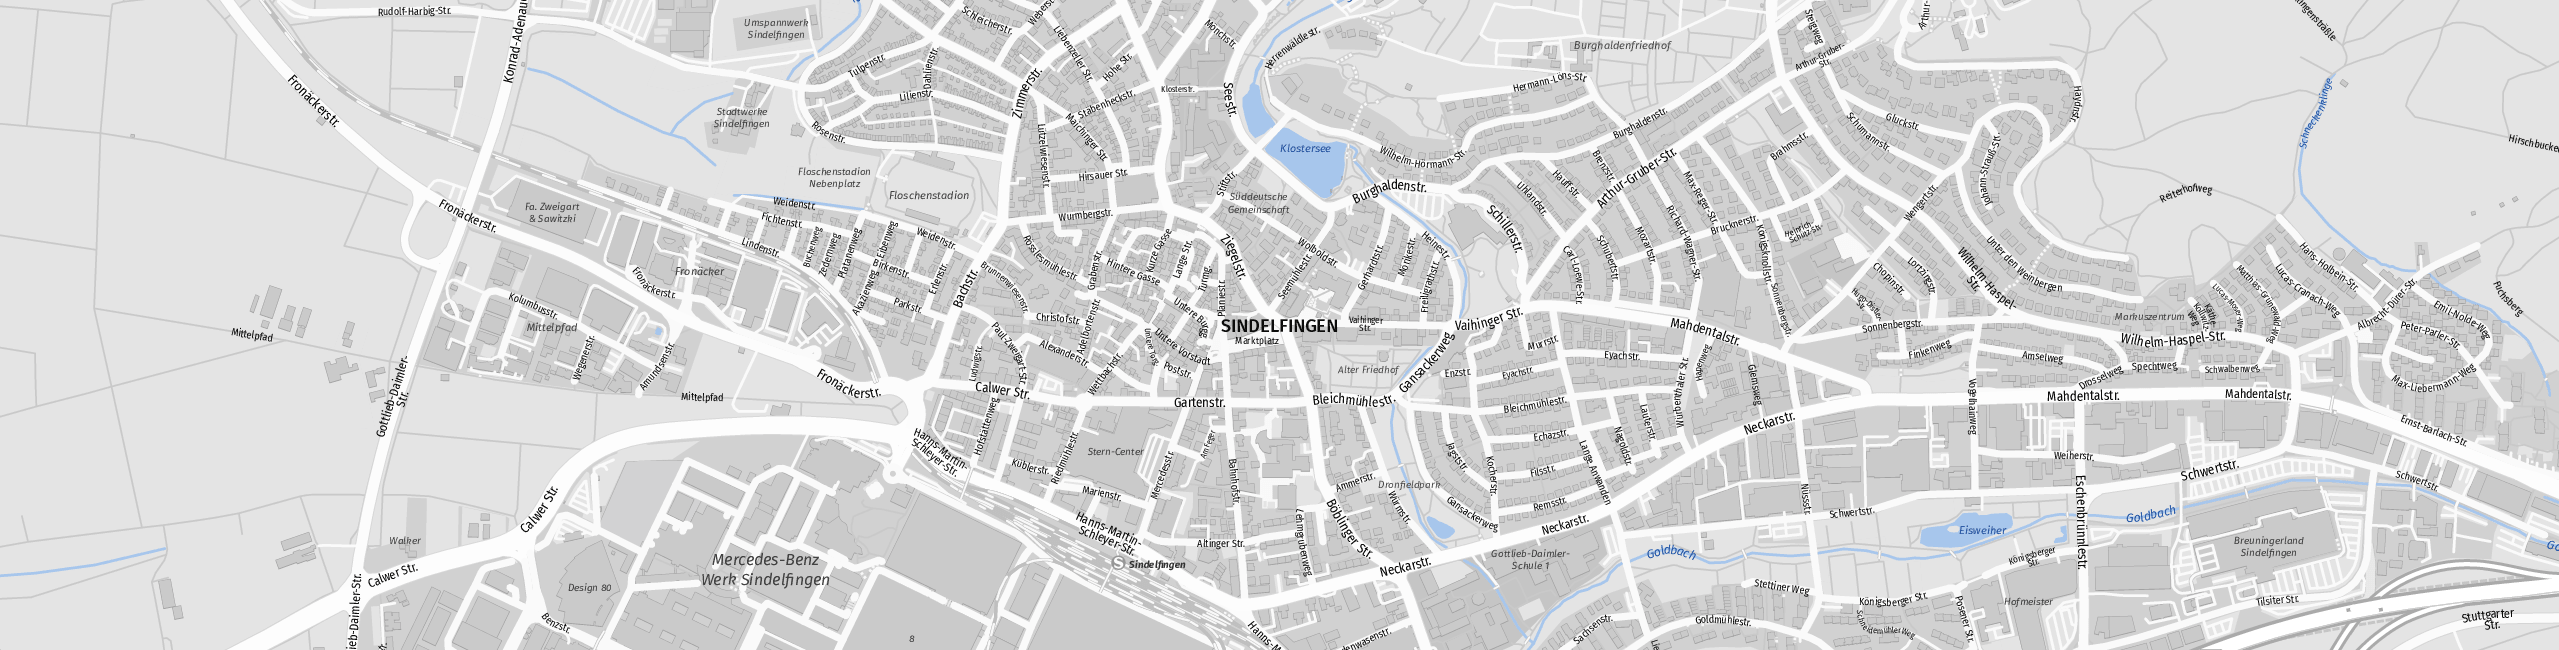 Stadtplan Sindelfingen zum Downloaden.